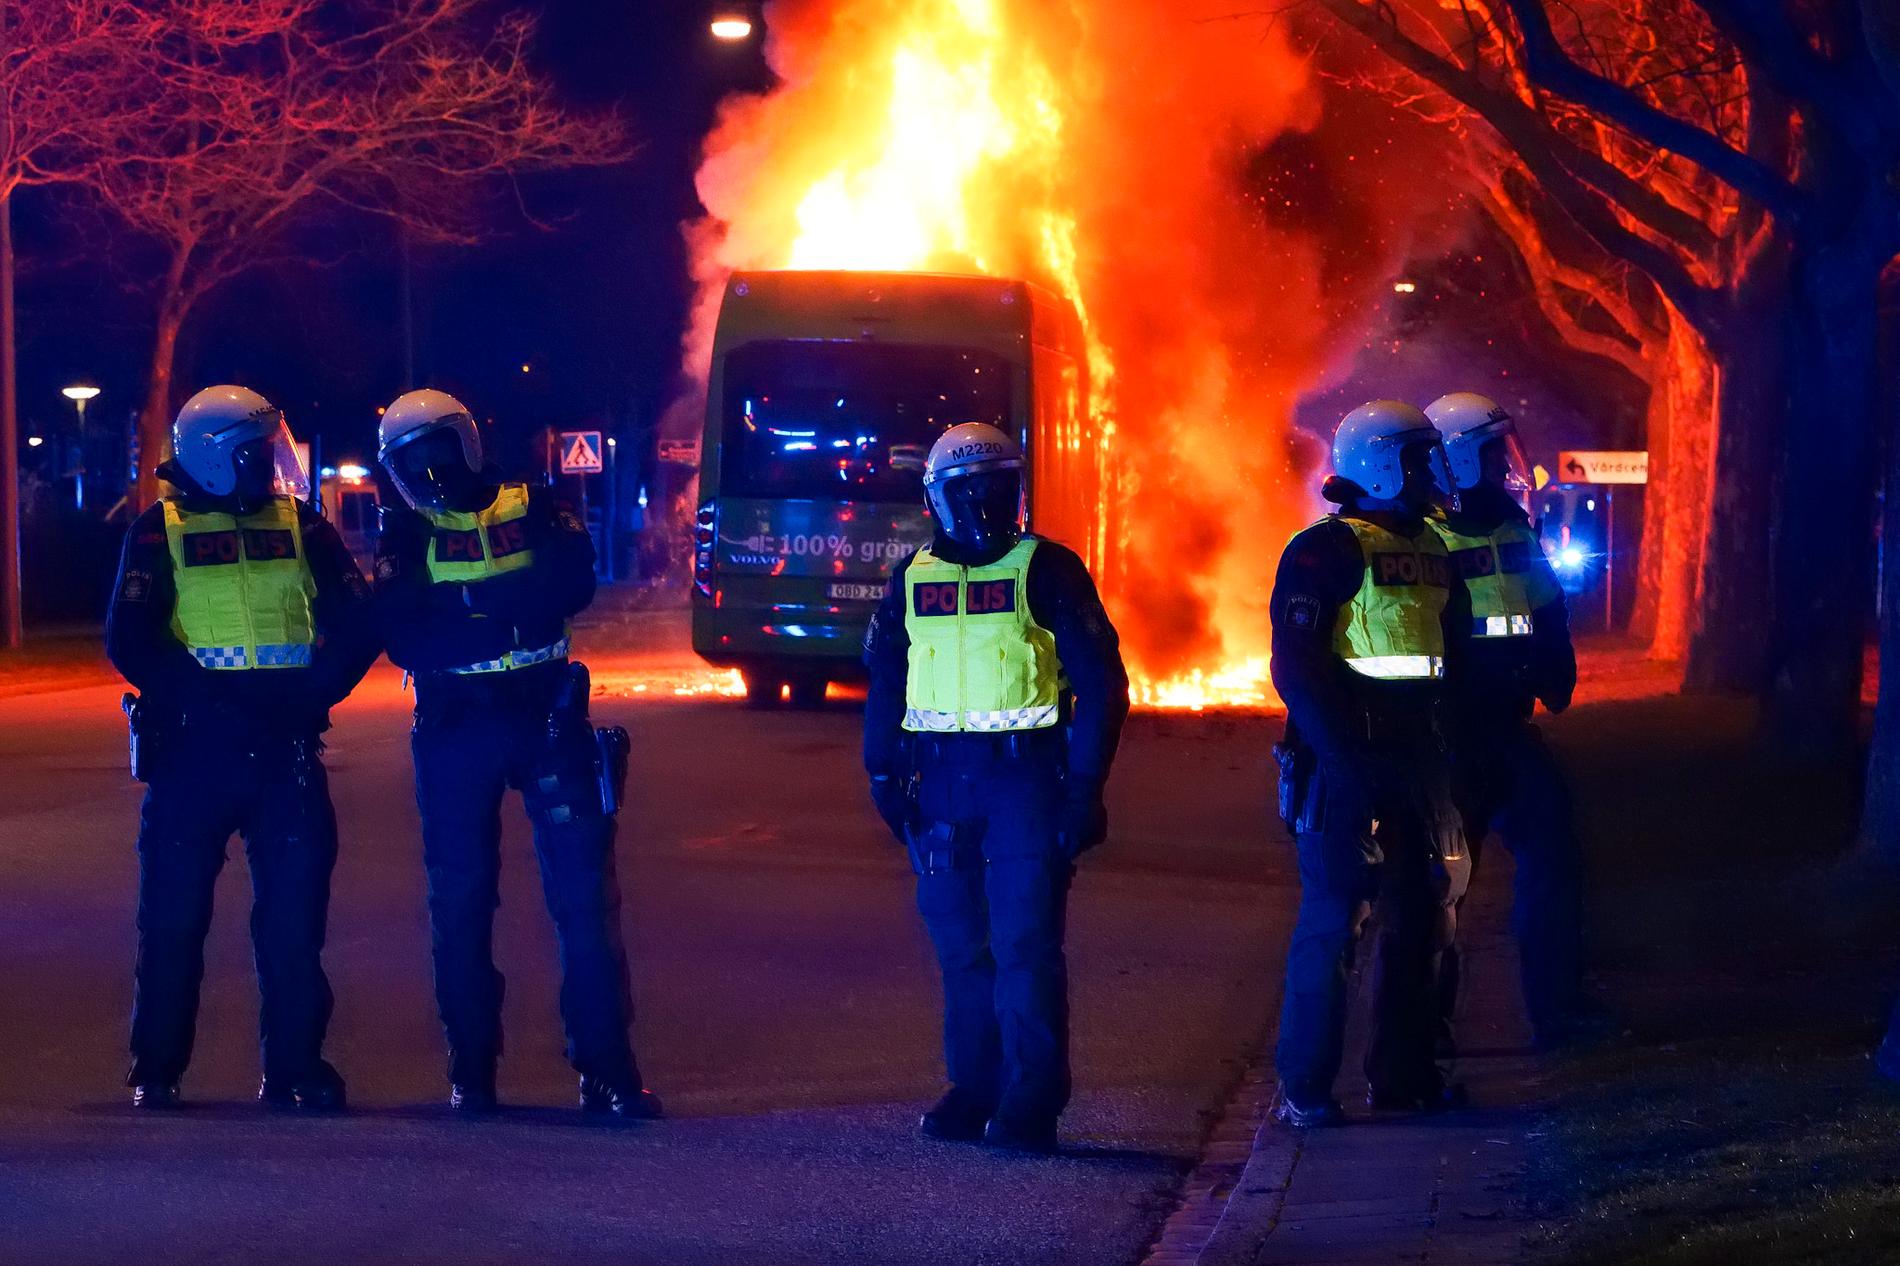 Kravallpolis framför den brinnande bussen. En stor insats med polis och räddningstjänst möts av stenkastande, enligt vittnen på platsen. 